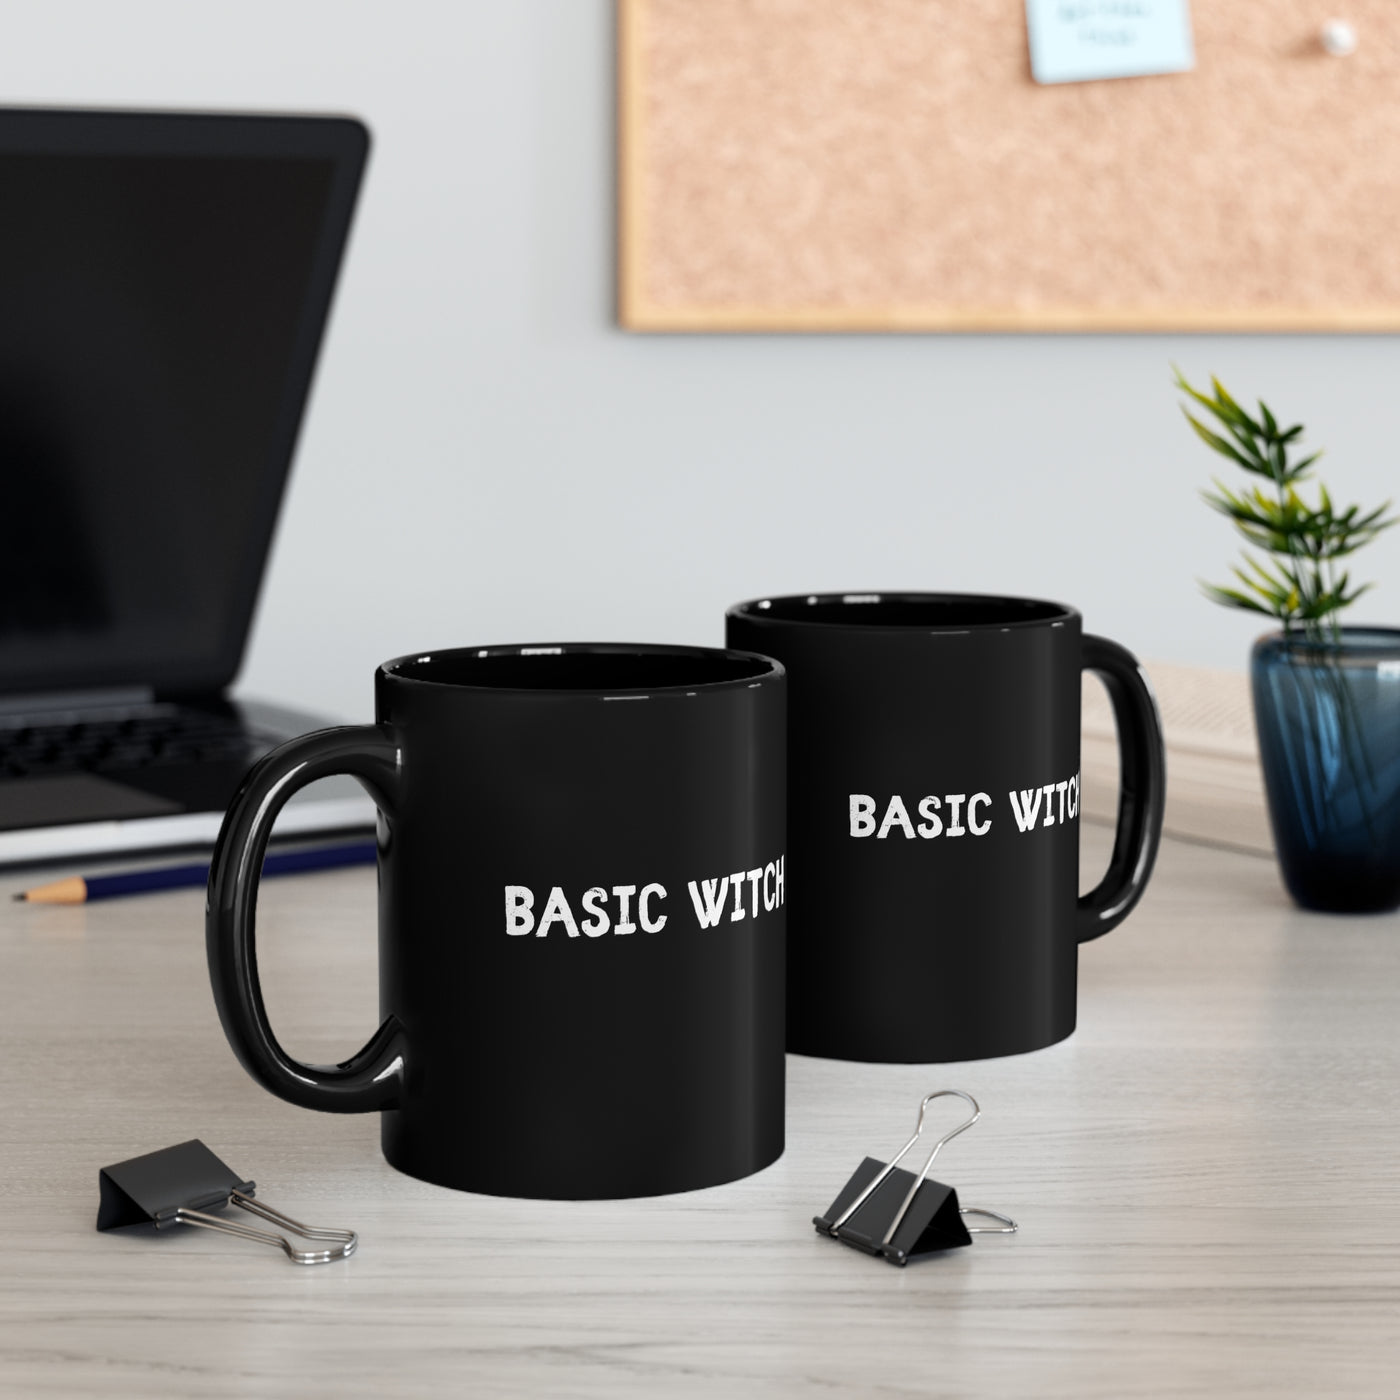 Basic Witch 11oz Ceramic Mug